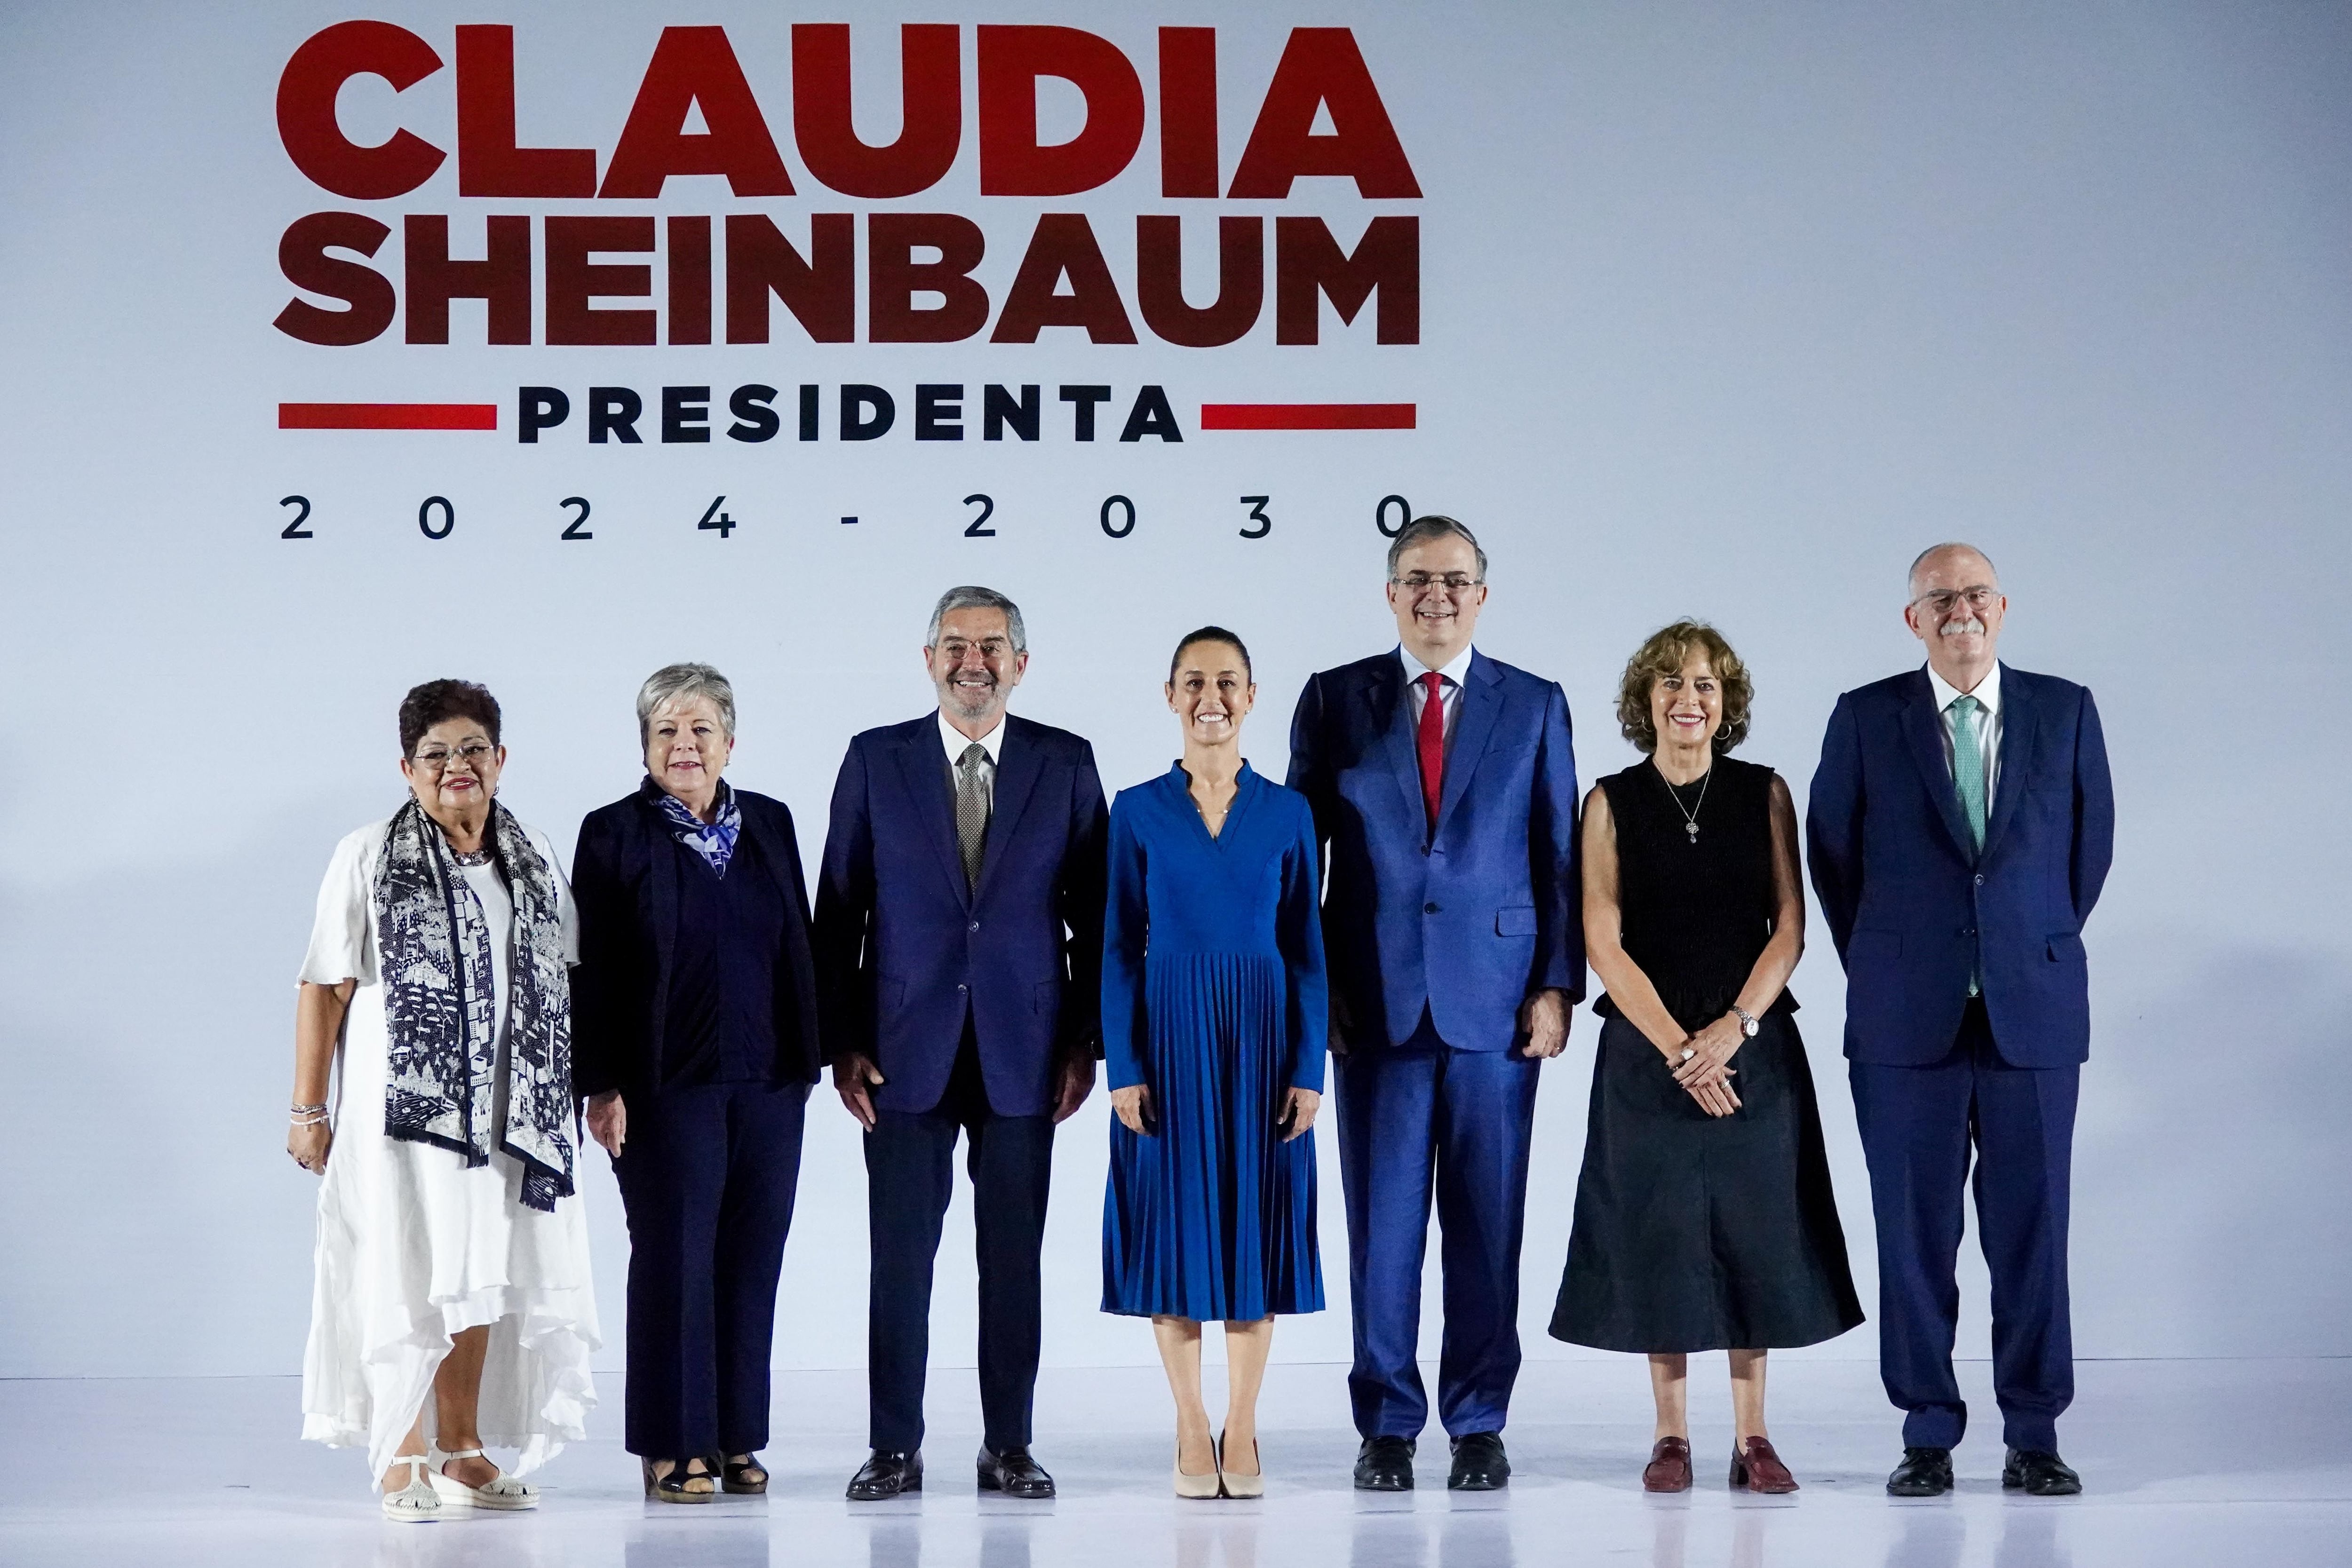 Claudia Sheinbaum posa con miembros del gabinete presidencial: Marcelo Ebrard, Juan Ramón De la Fuente; Rosaura Ruiz; Ernestina Godoy; Alicia Bárcena y julio Berdegué.
(Foto: GALO CAÑAS/CUARTOSCURO)